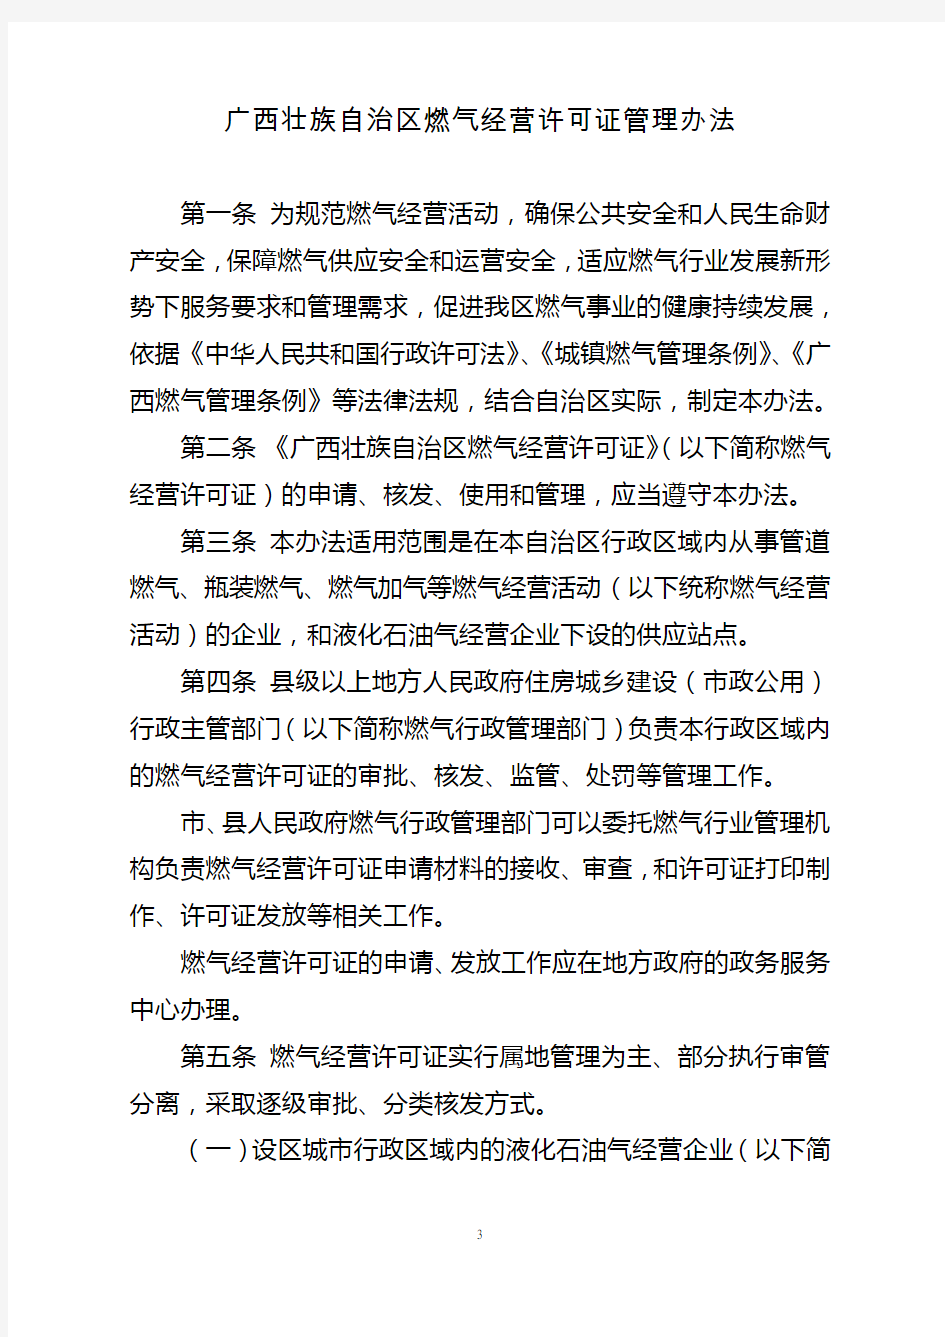 广西壮族自治区燃气经营许可证管理办法 桂建城72